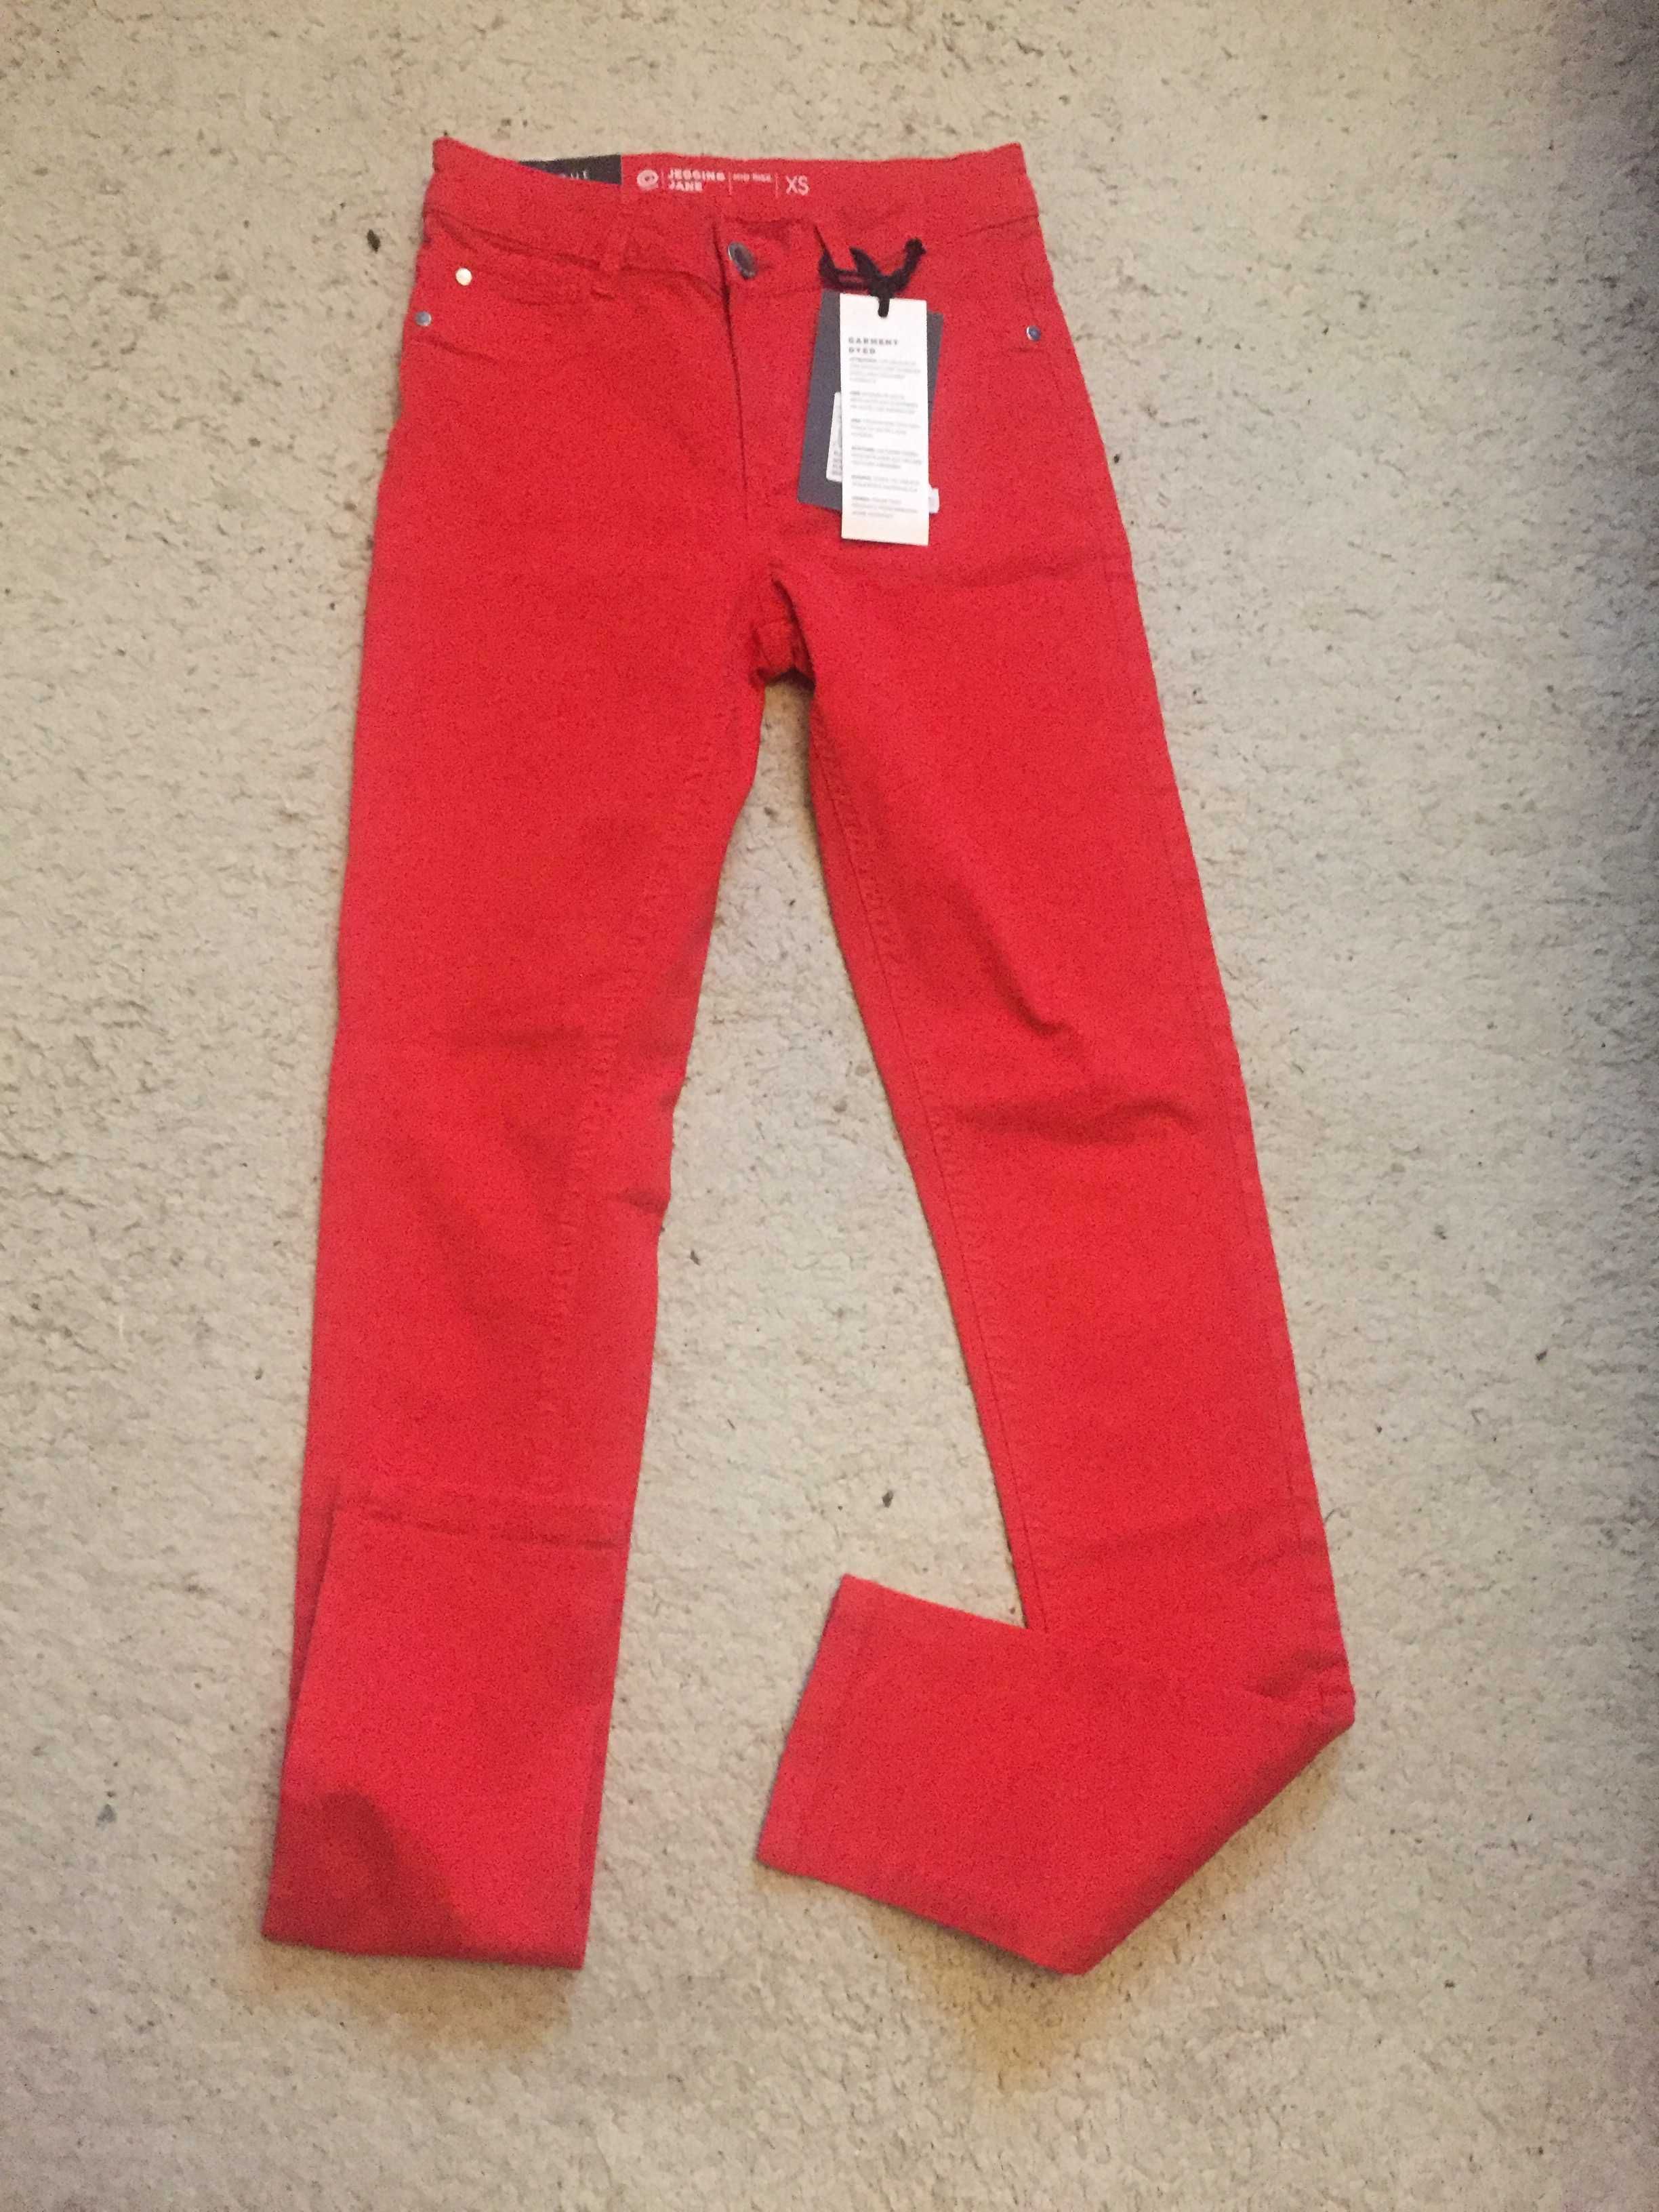 czerwone jeansy spodnie CUBUS rozmiar xs nowe